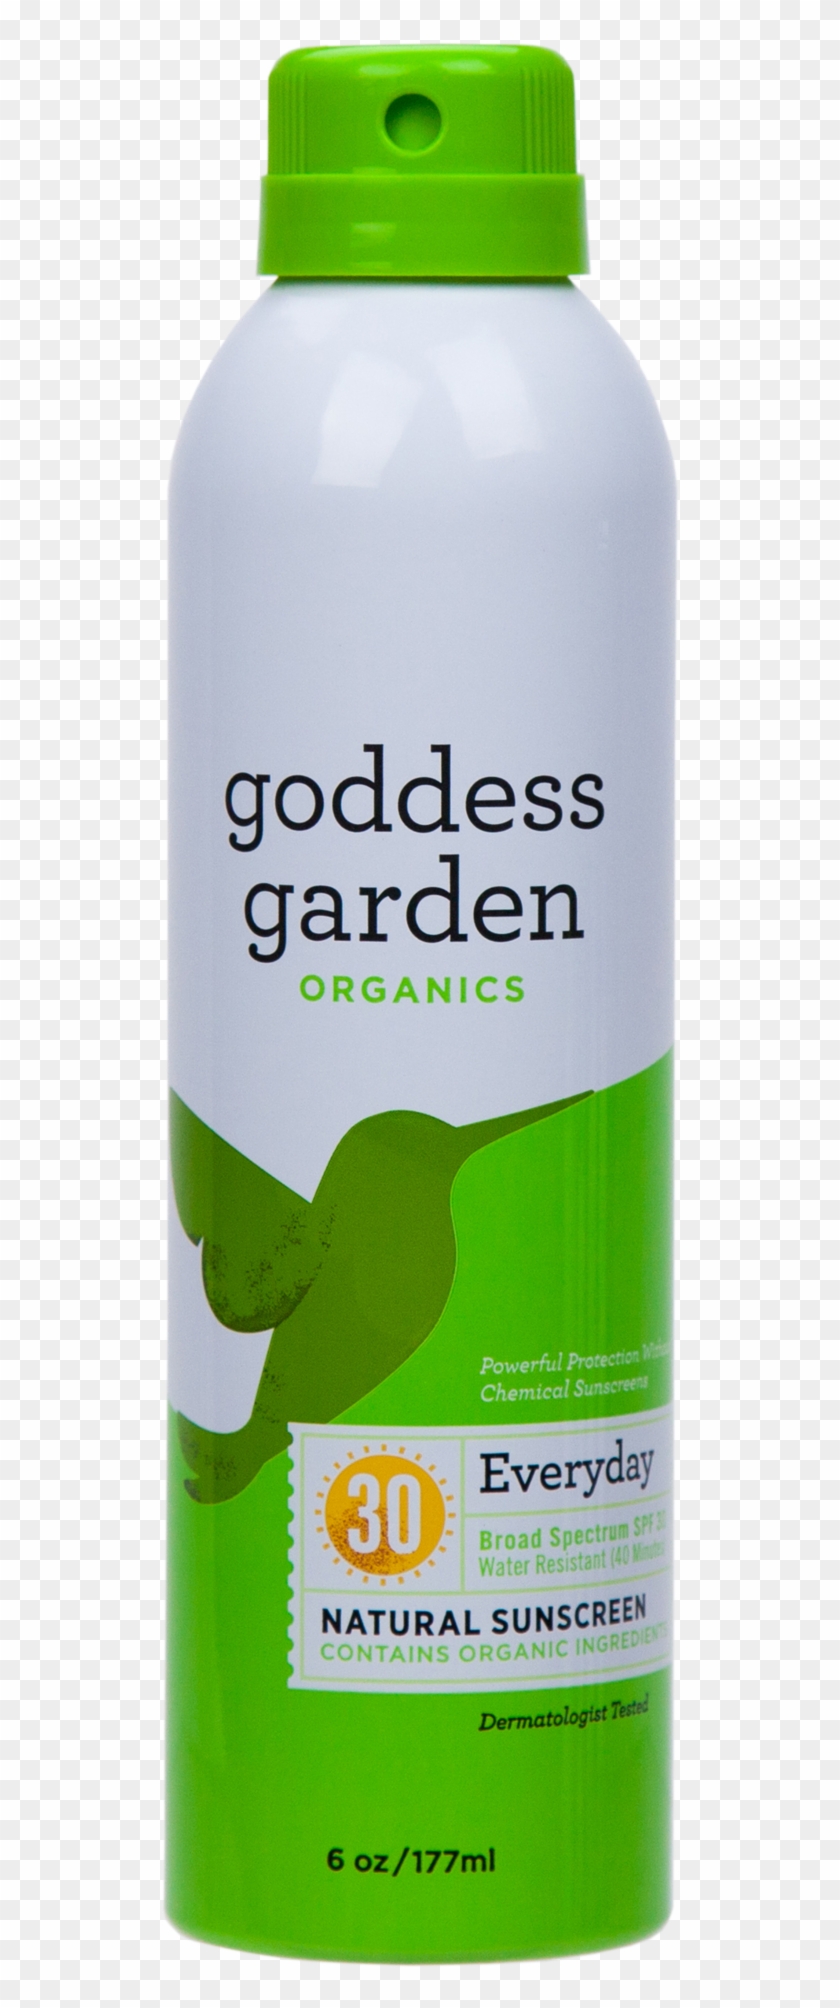 Goddess Garden Everyday Natural Sunscreen Continuous - Organic Sunscreen Spray Clipart #1515907